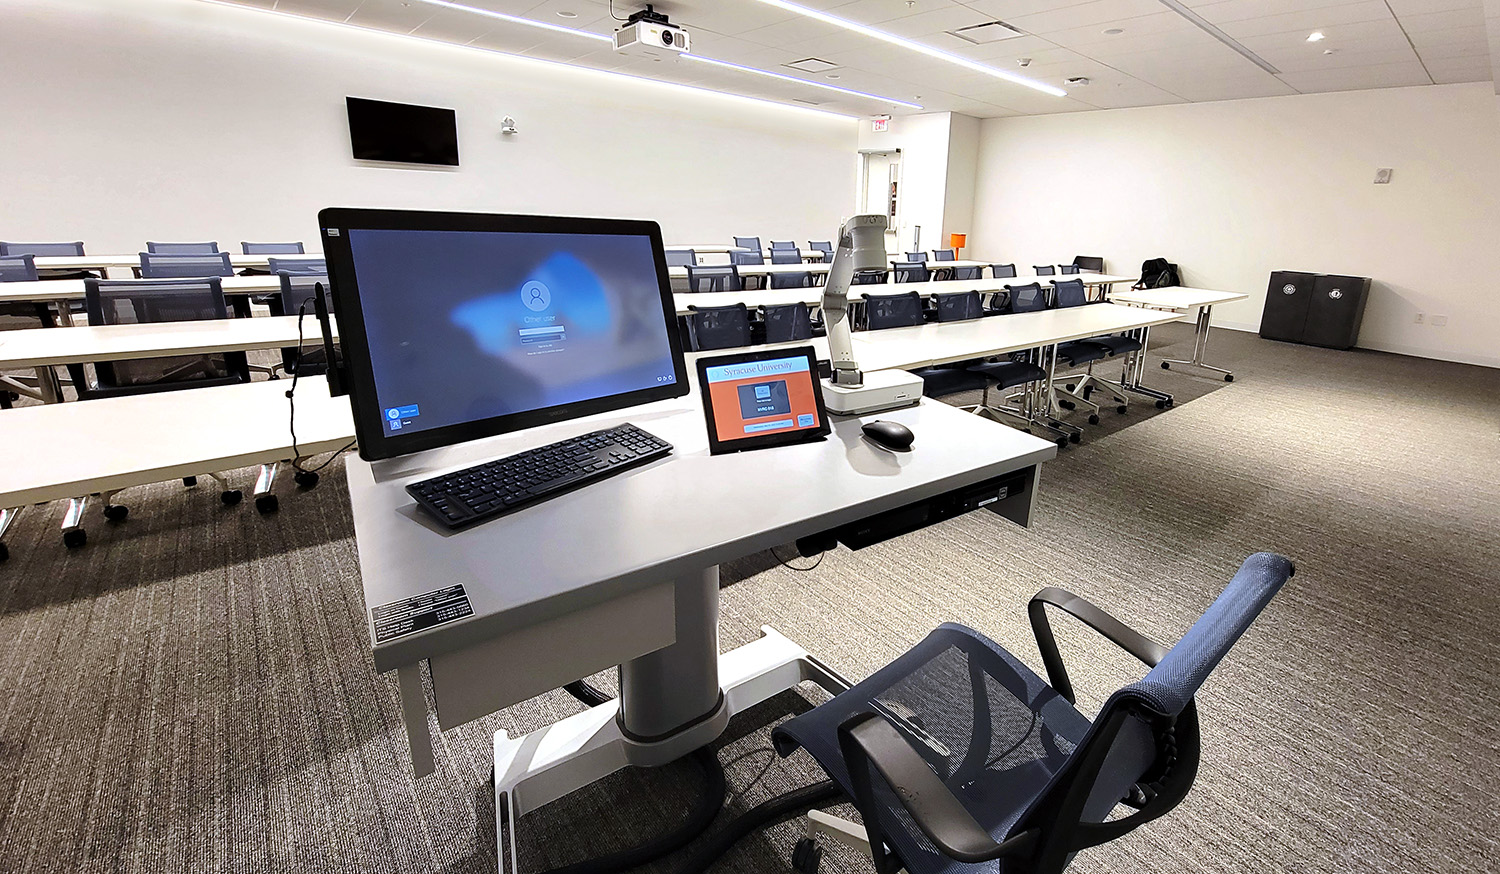 Le poste de travail d’une salle de classe standard est une table AirTouch Steelcase réglable en hauteur, intégrant un mini‑PC, un écran d’annotation, un lecteur Blu‑ray, une caméra document, une connectivité audiovisuelle avec l’alimentation, et un écran tactile 10